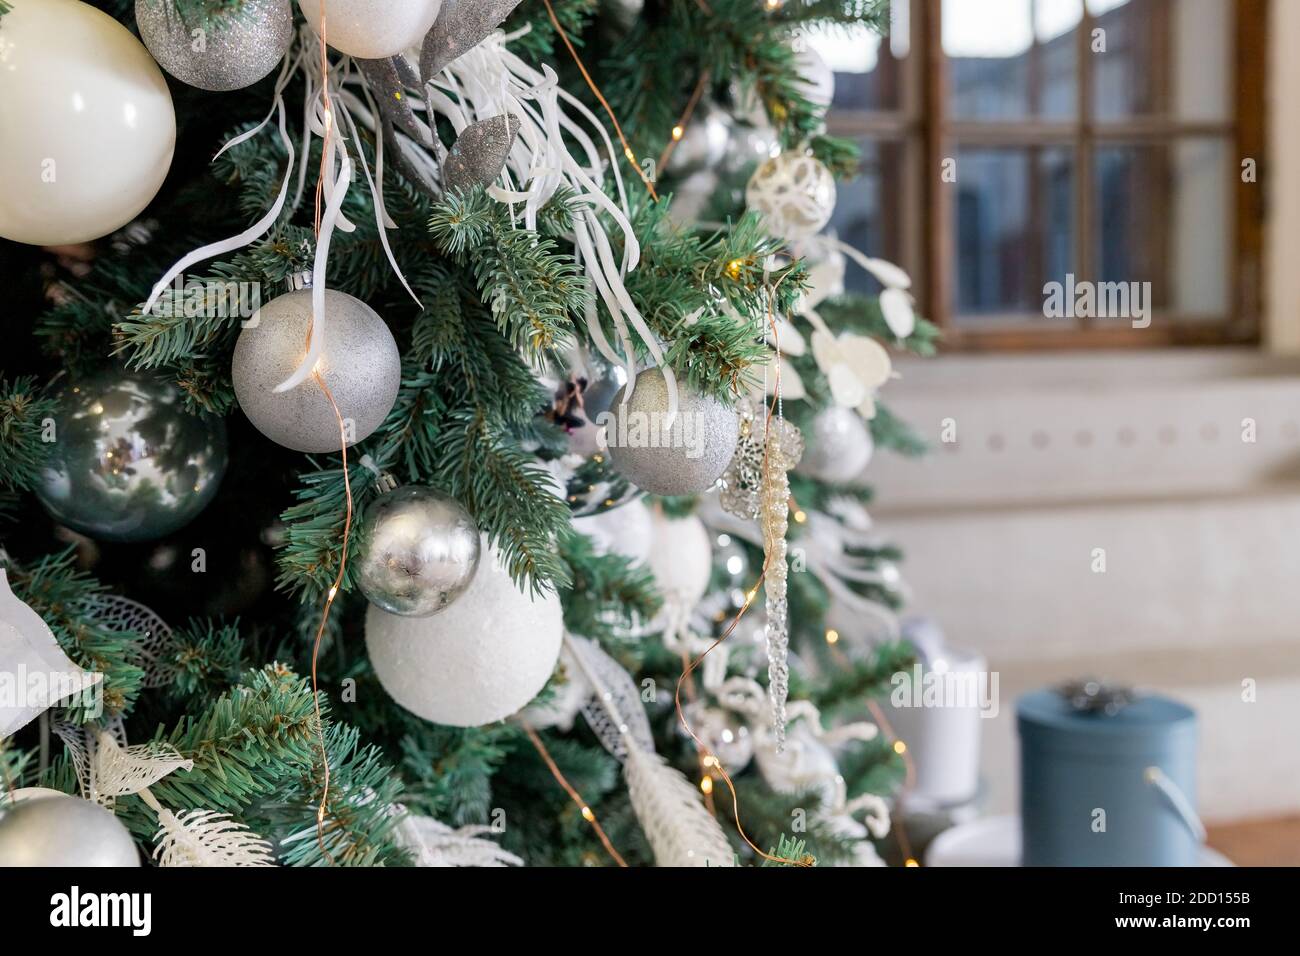 Rama de árbol de Navidad decorada con bolas de plata y decoración blanca.  Árbol con estilo con bolas de plata y luces en la sala de fiestas.  Decoración moderna Fotografía de stock -